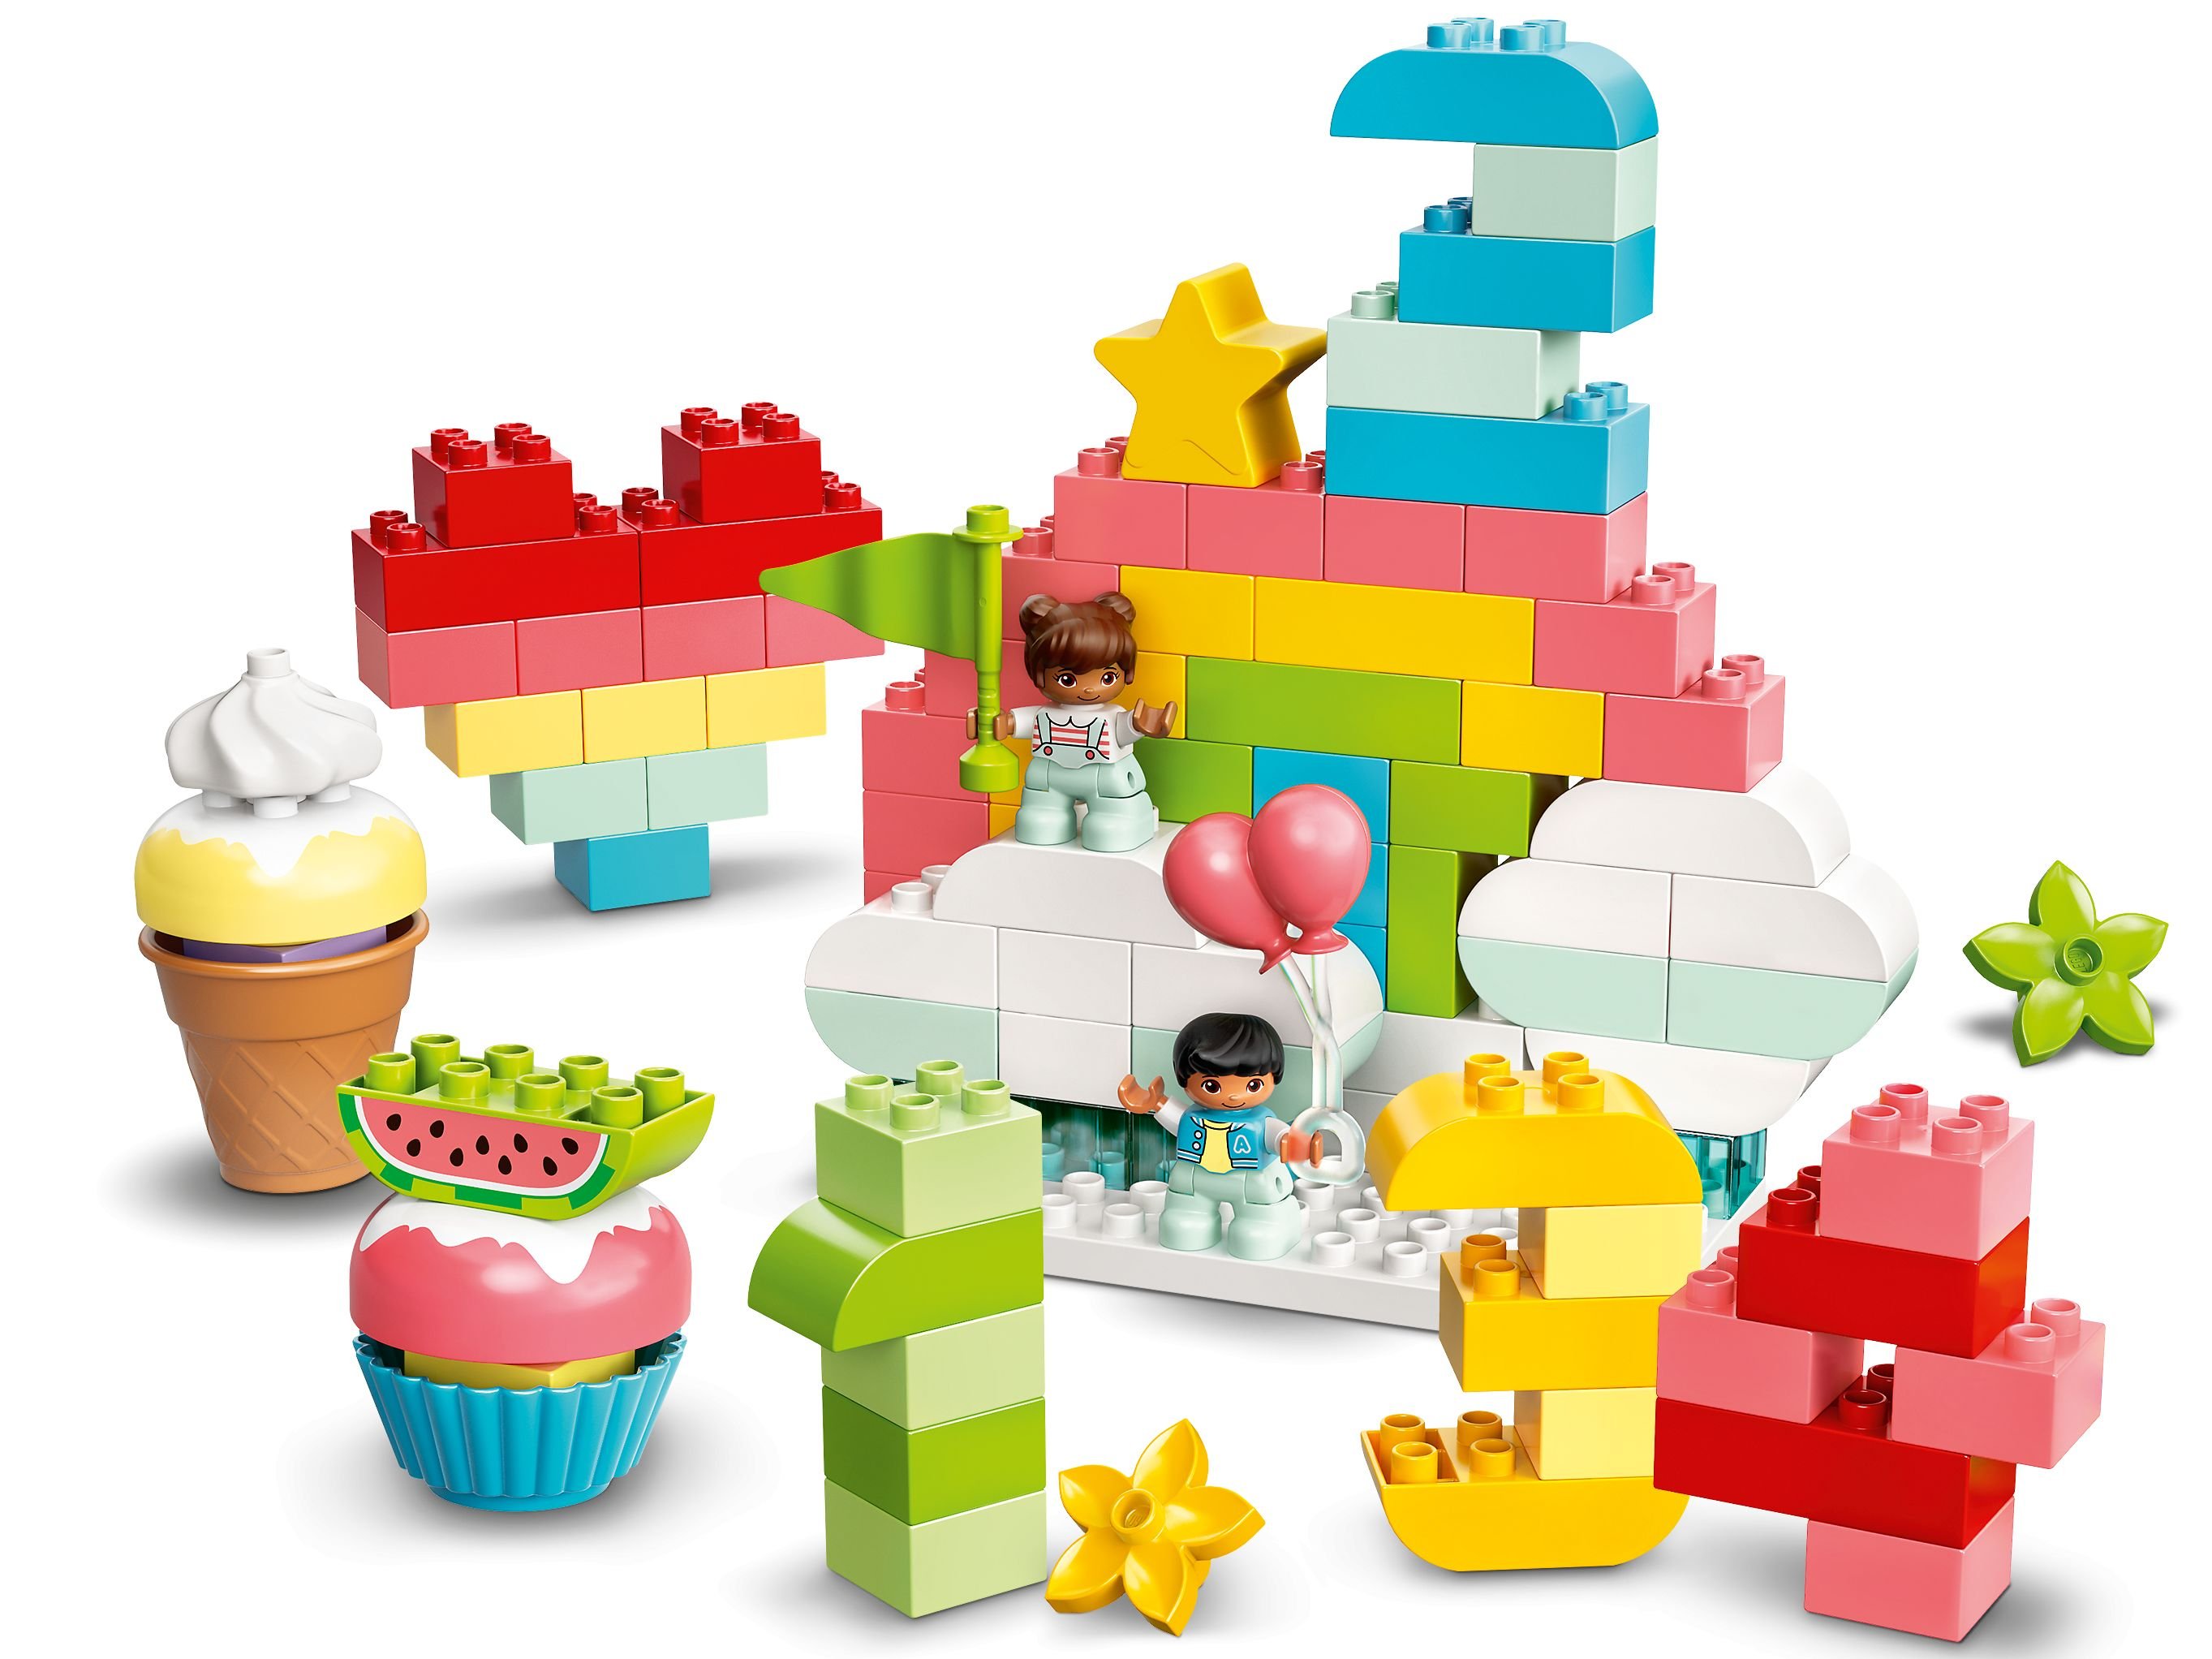 LEGO Duplo 10958 Kreative Geburtstagsparty LEGO_10958_alt2.jpg